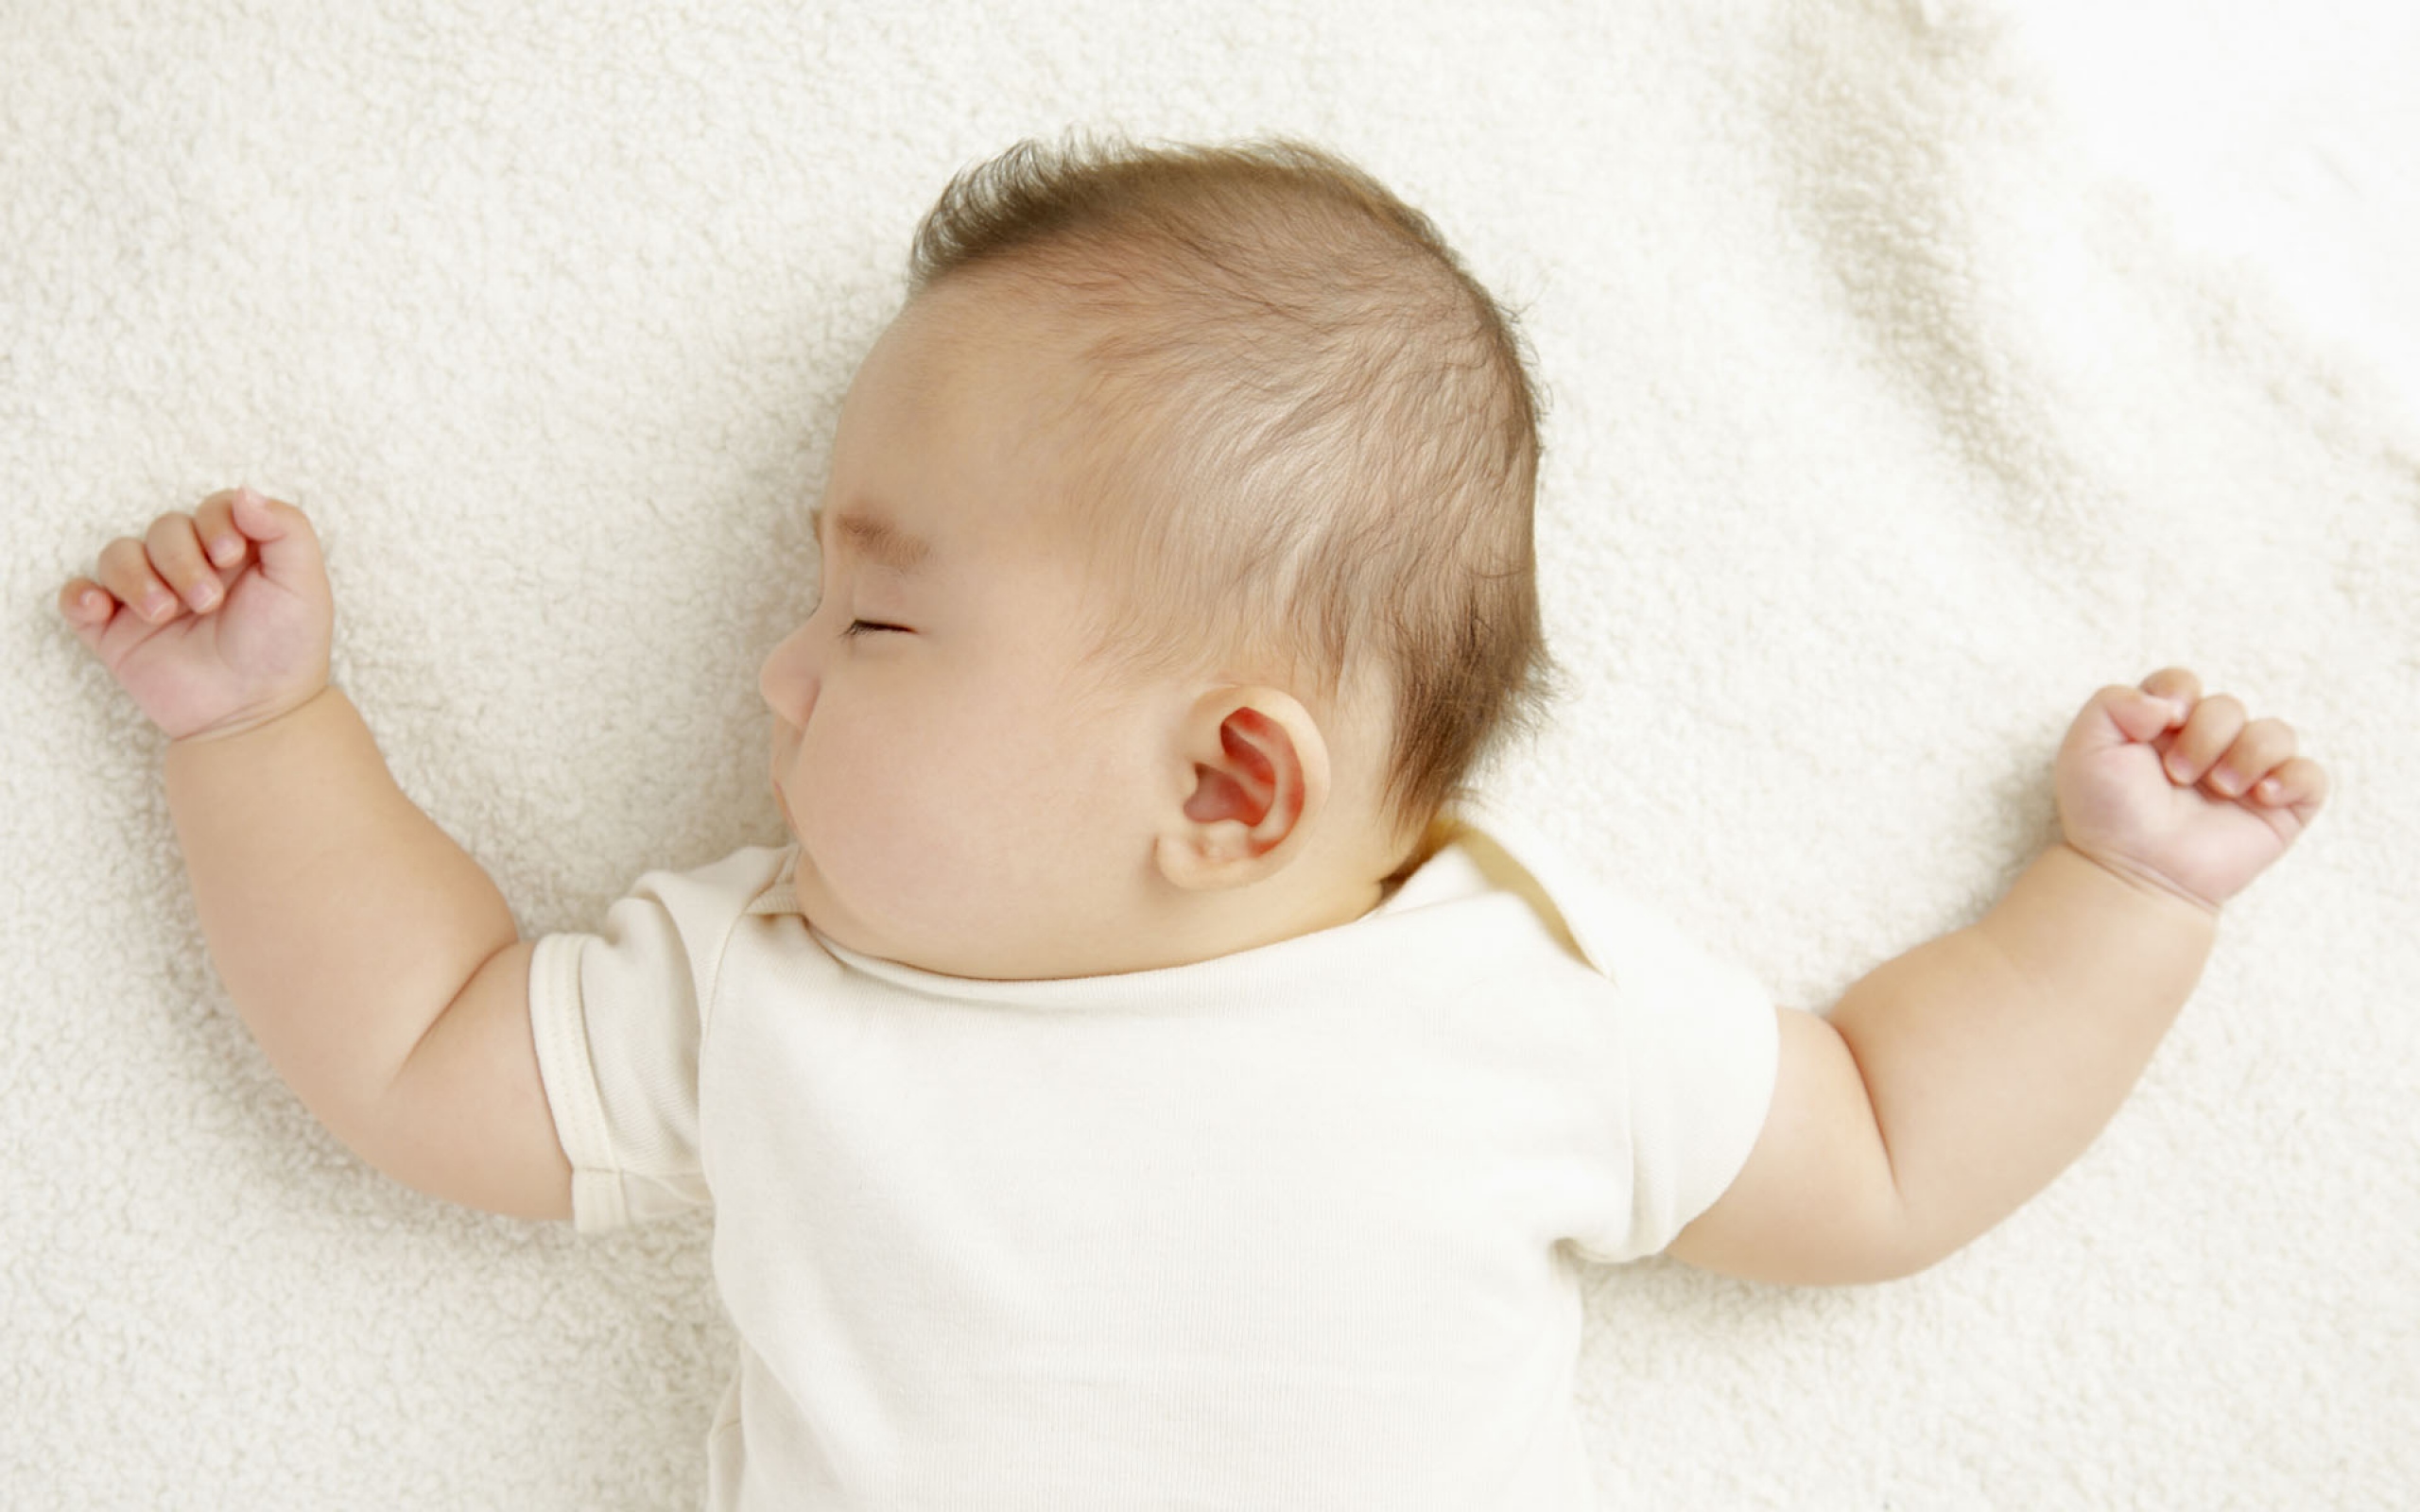 どうしたら直せる 赤ちゃんの向き癖を早期に直したい理由 メイキーズメディア